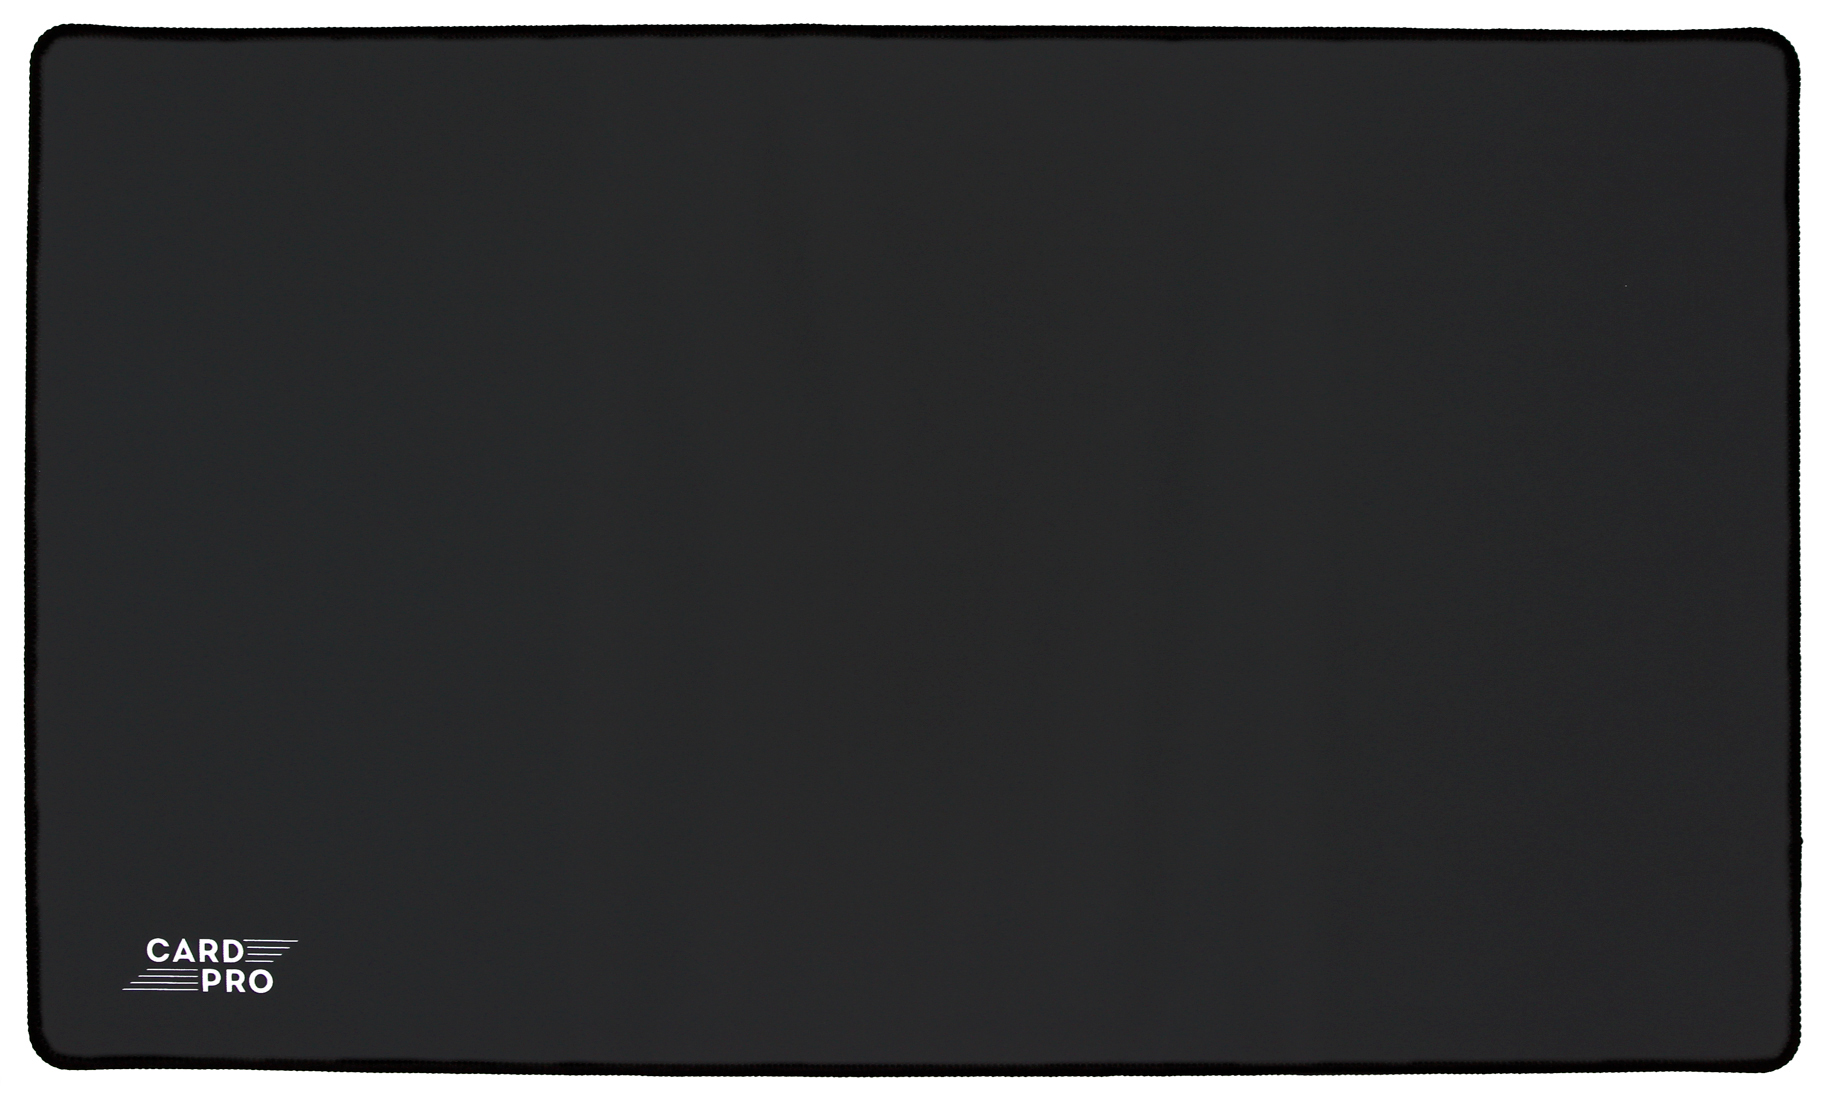 Игровой коврик Card-Pro Черный 274733 коврик для мыши smartbuy rush gear up игровой 900x400x3 мм рисунок милитари